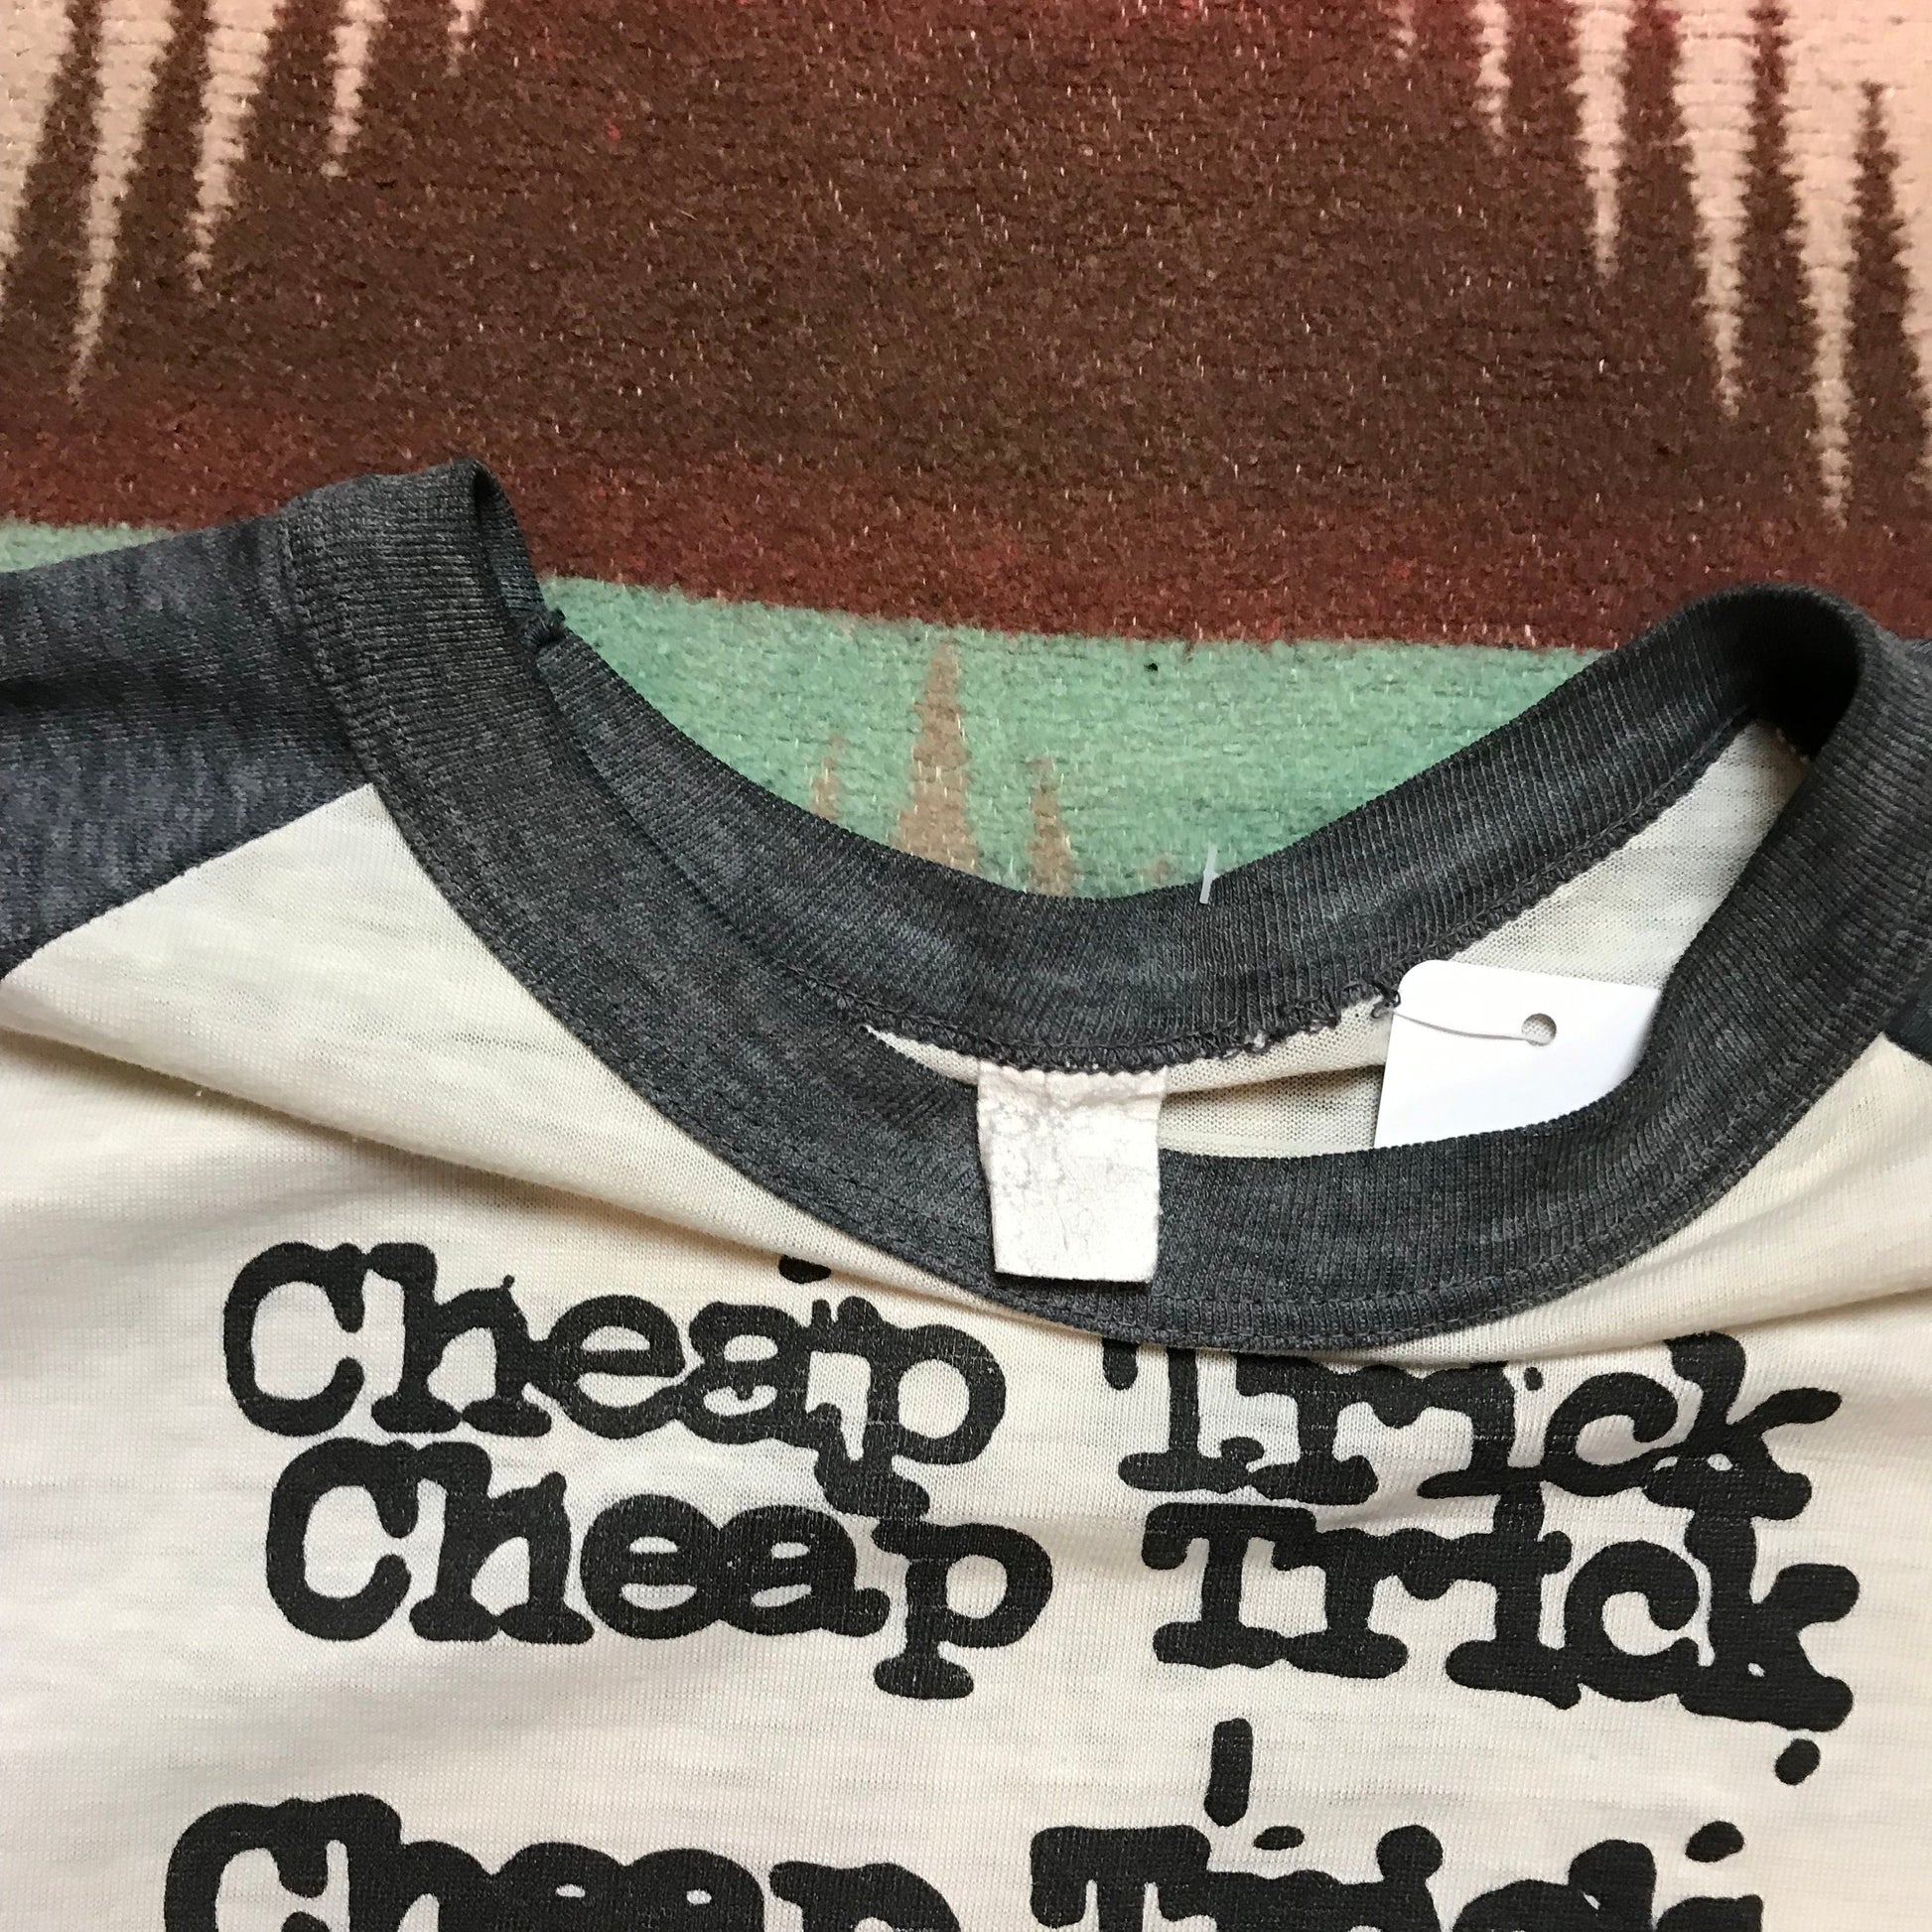 1970s Cheap Trick Tour 1979 Raglan T-Shirt Made in USA Size M/L